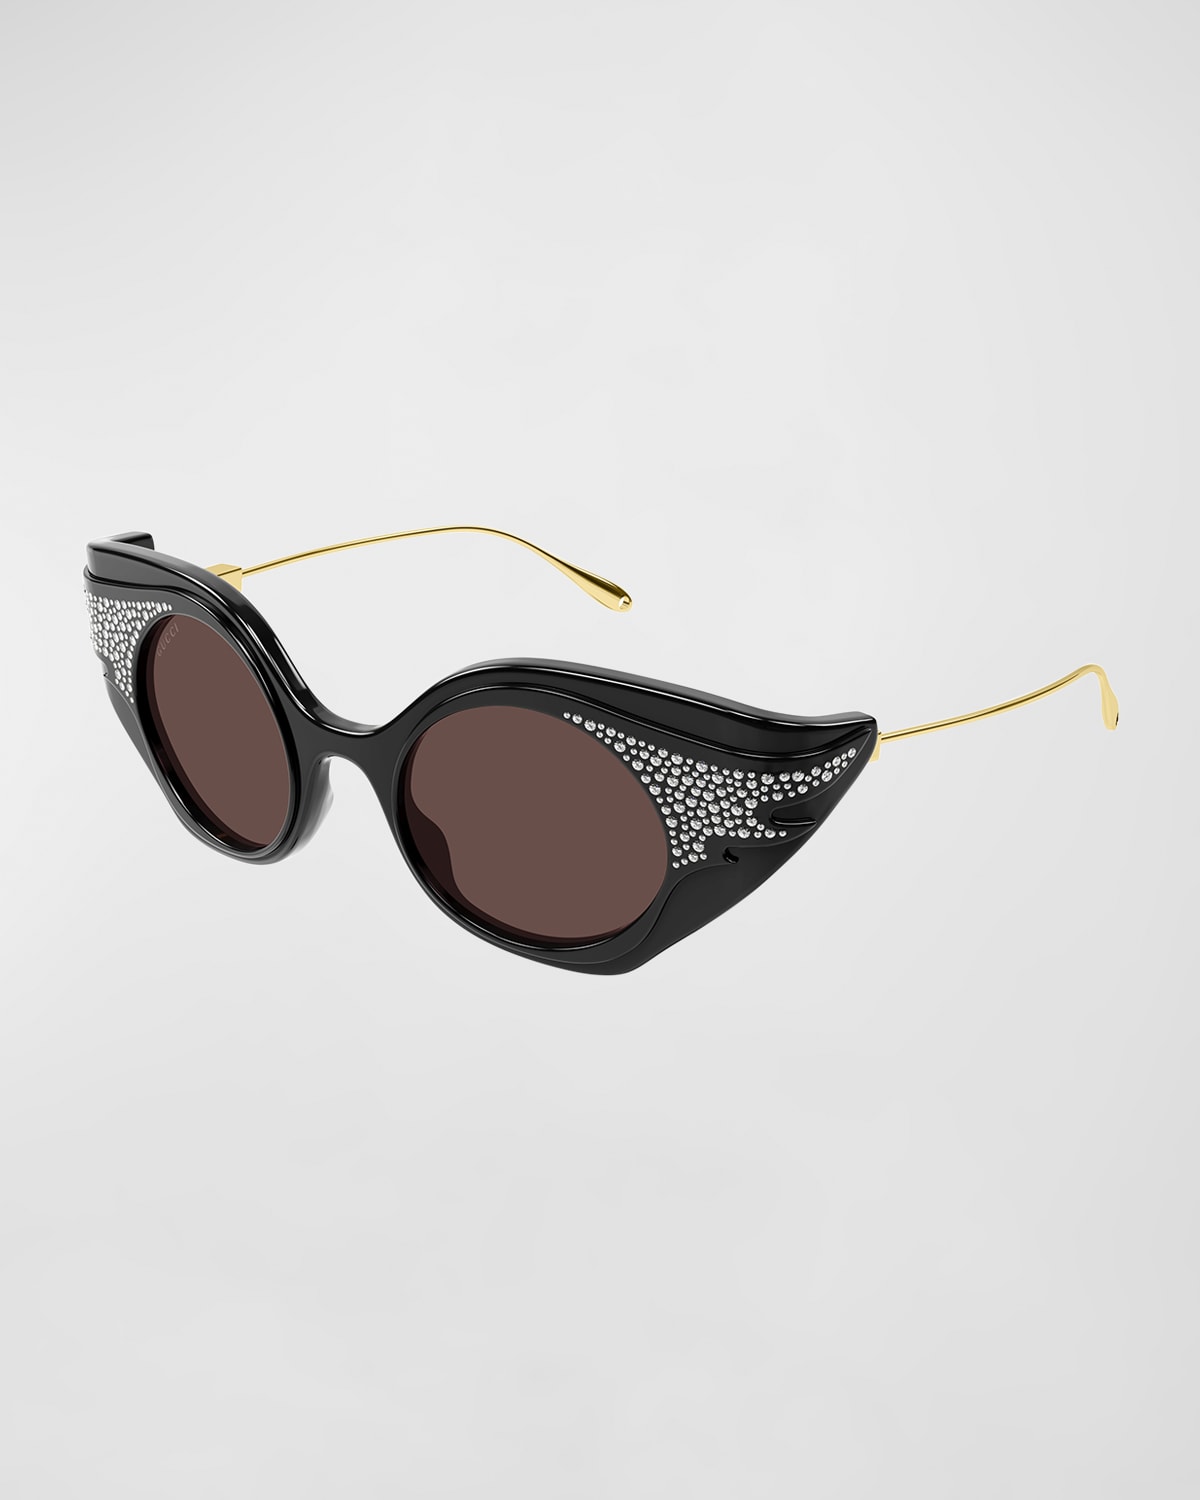 Gucci Monochrome Oval Acetate Sunglasses Neiman Marcus